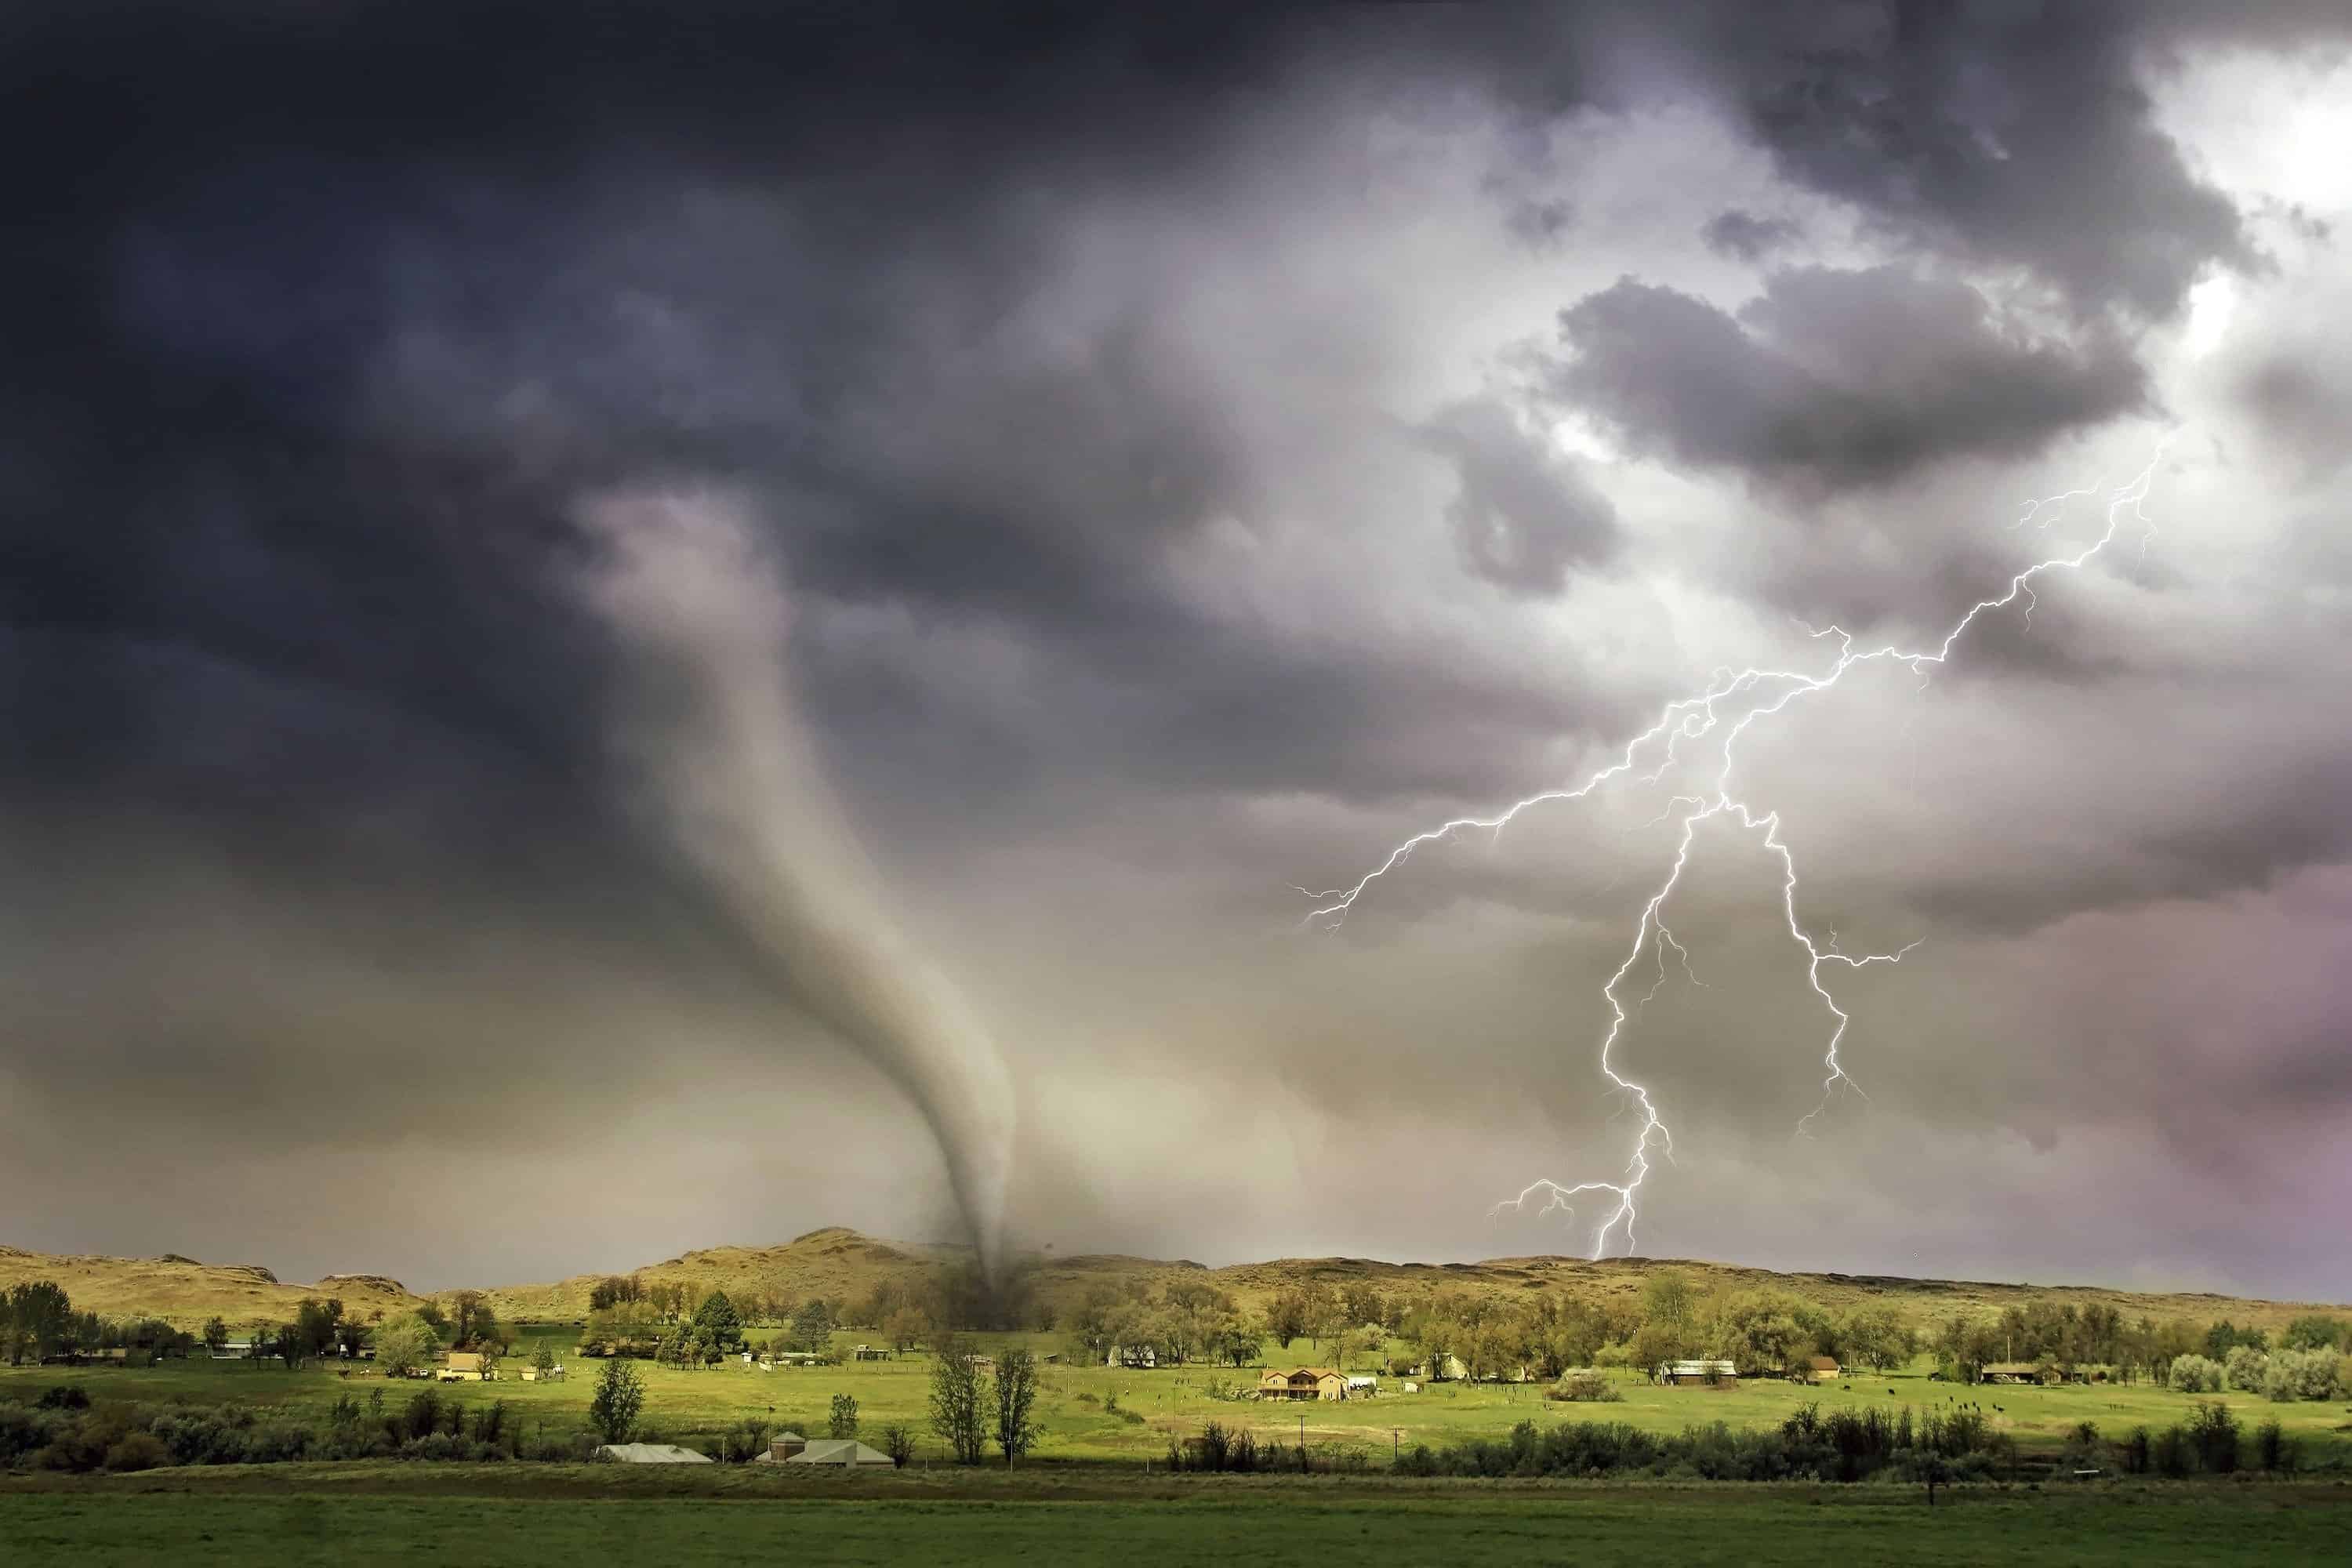 How to prepare for home emergencies like a tornado